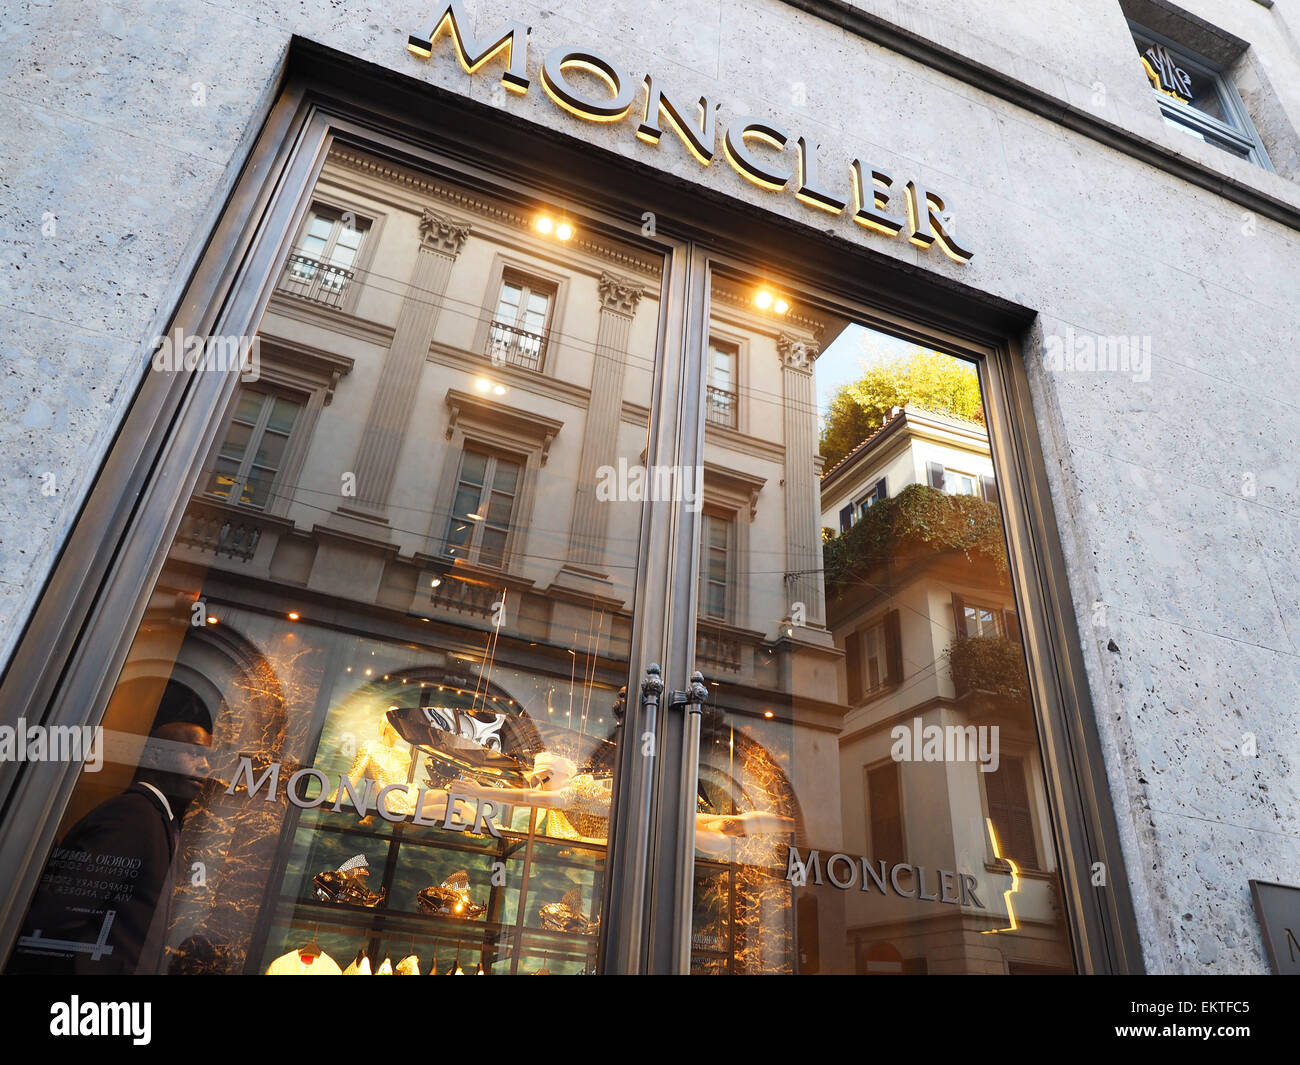 moncler negozi italia